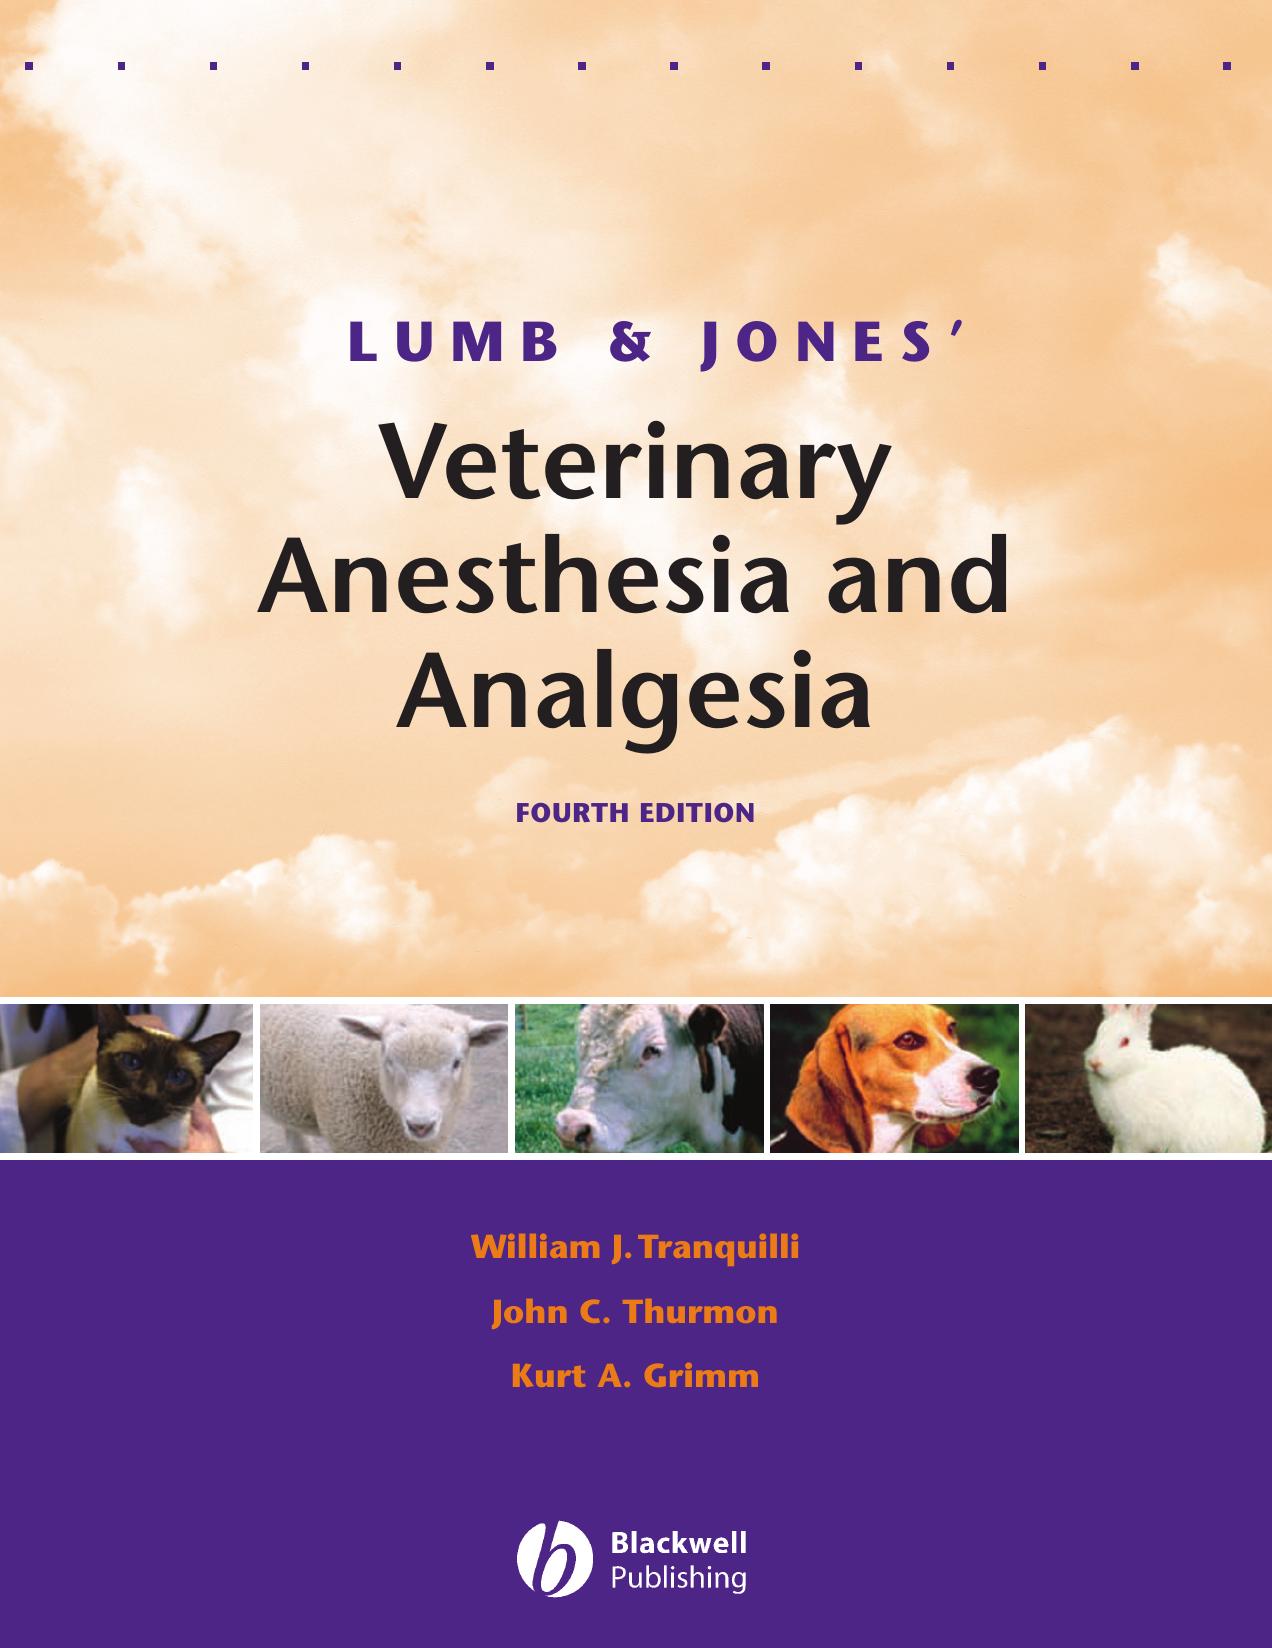 Lumb & Jones’ Veterinary Anesthesia and Analgesia